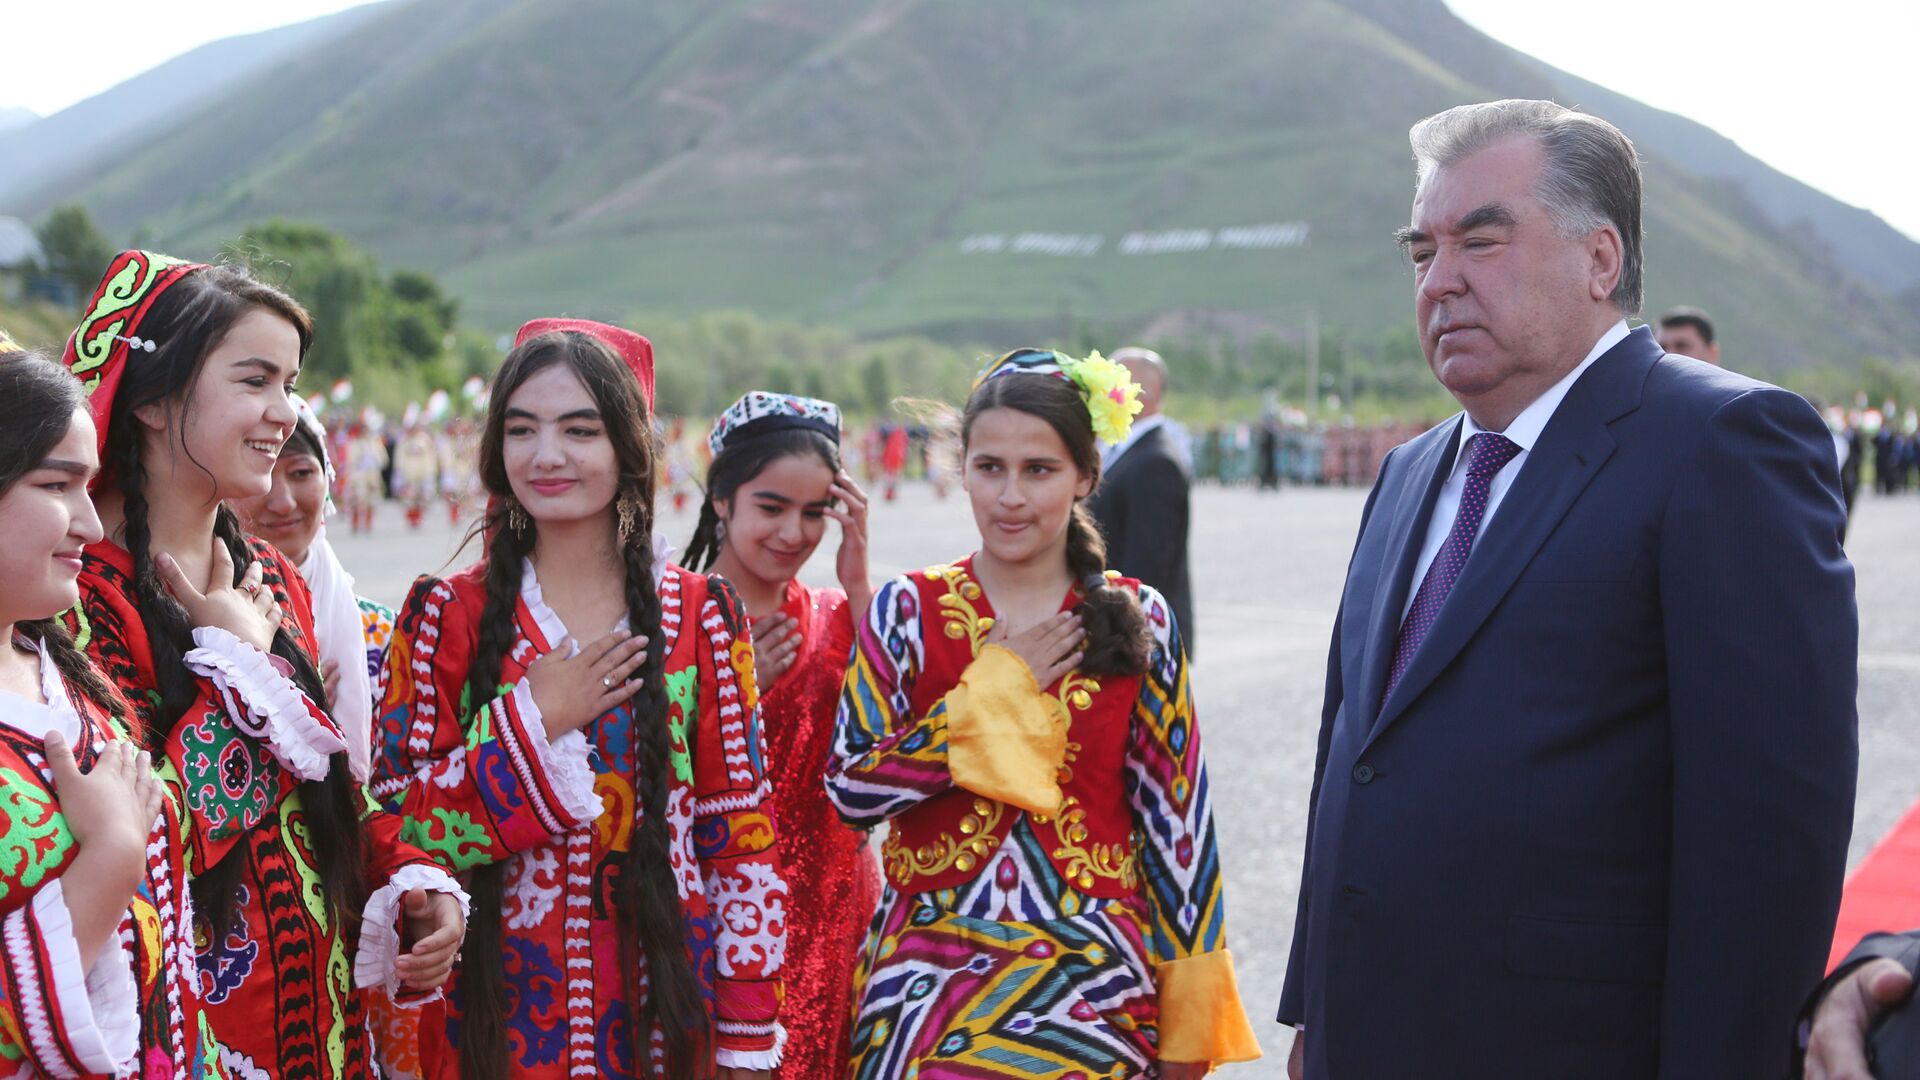 Таджикистан празднует День национального единства - Sputnik Таджикистан, 1920, 21.05.2021